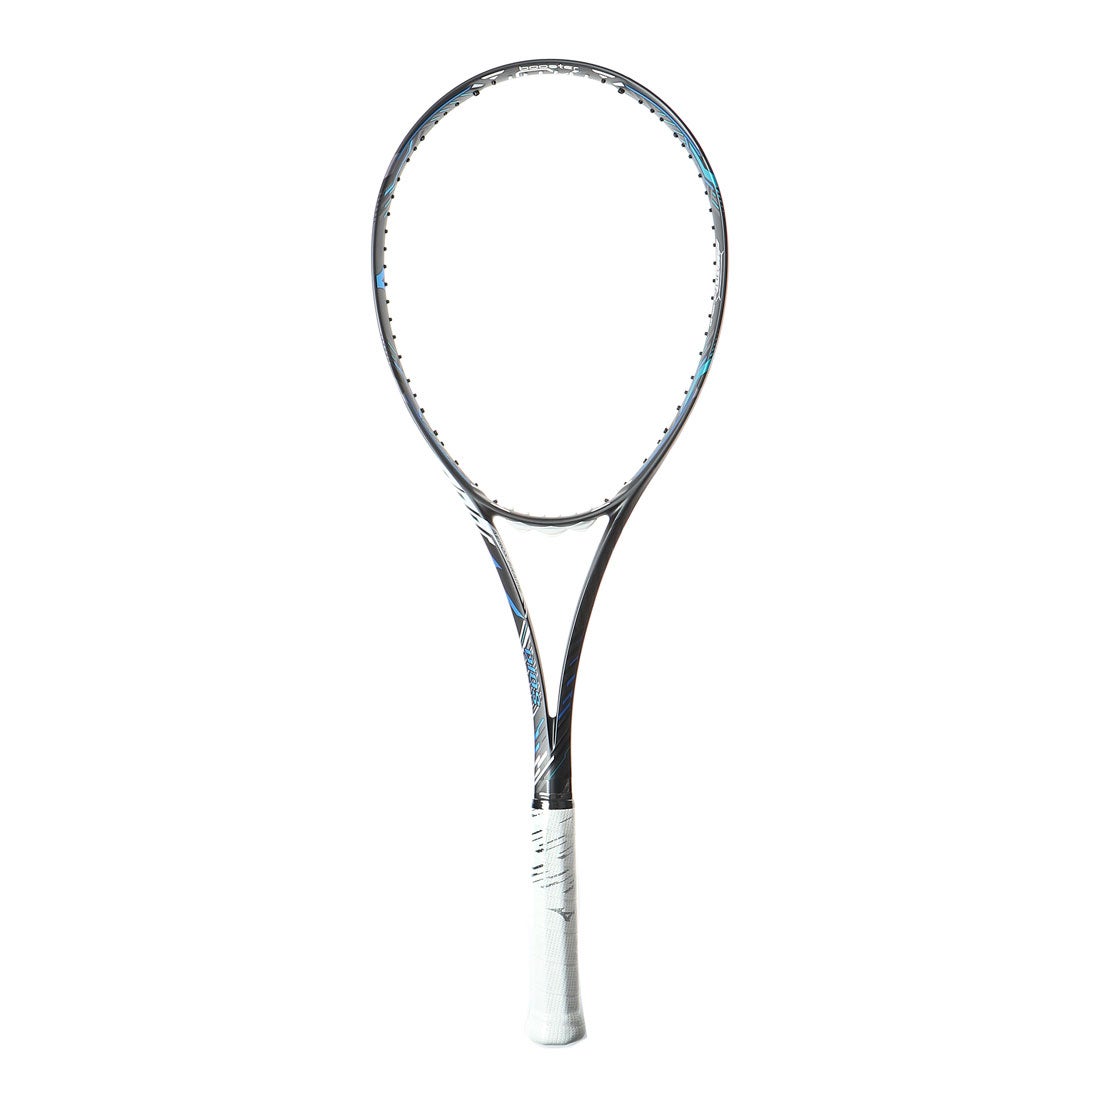 ミズノ MIZUNO 軟式テニス 未張りラケット DIOS 50-R(ディオス50アール) 63JTN06527